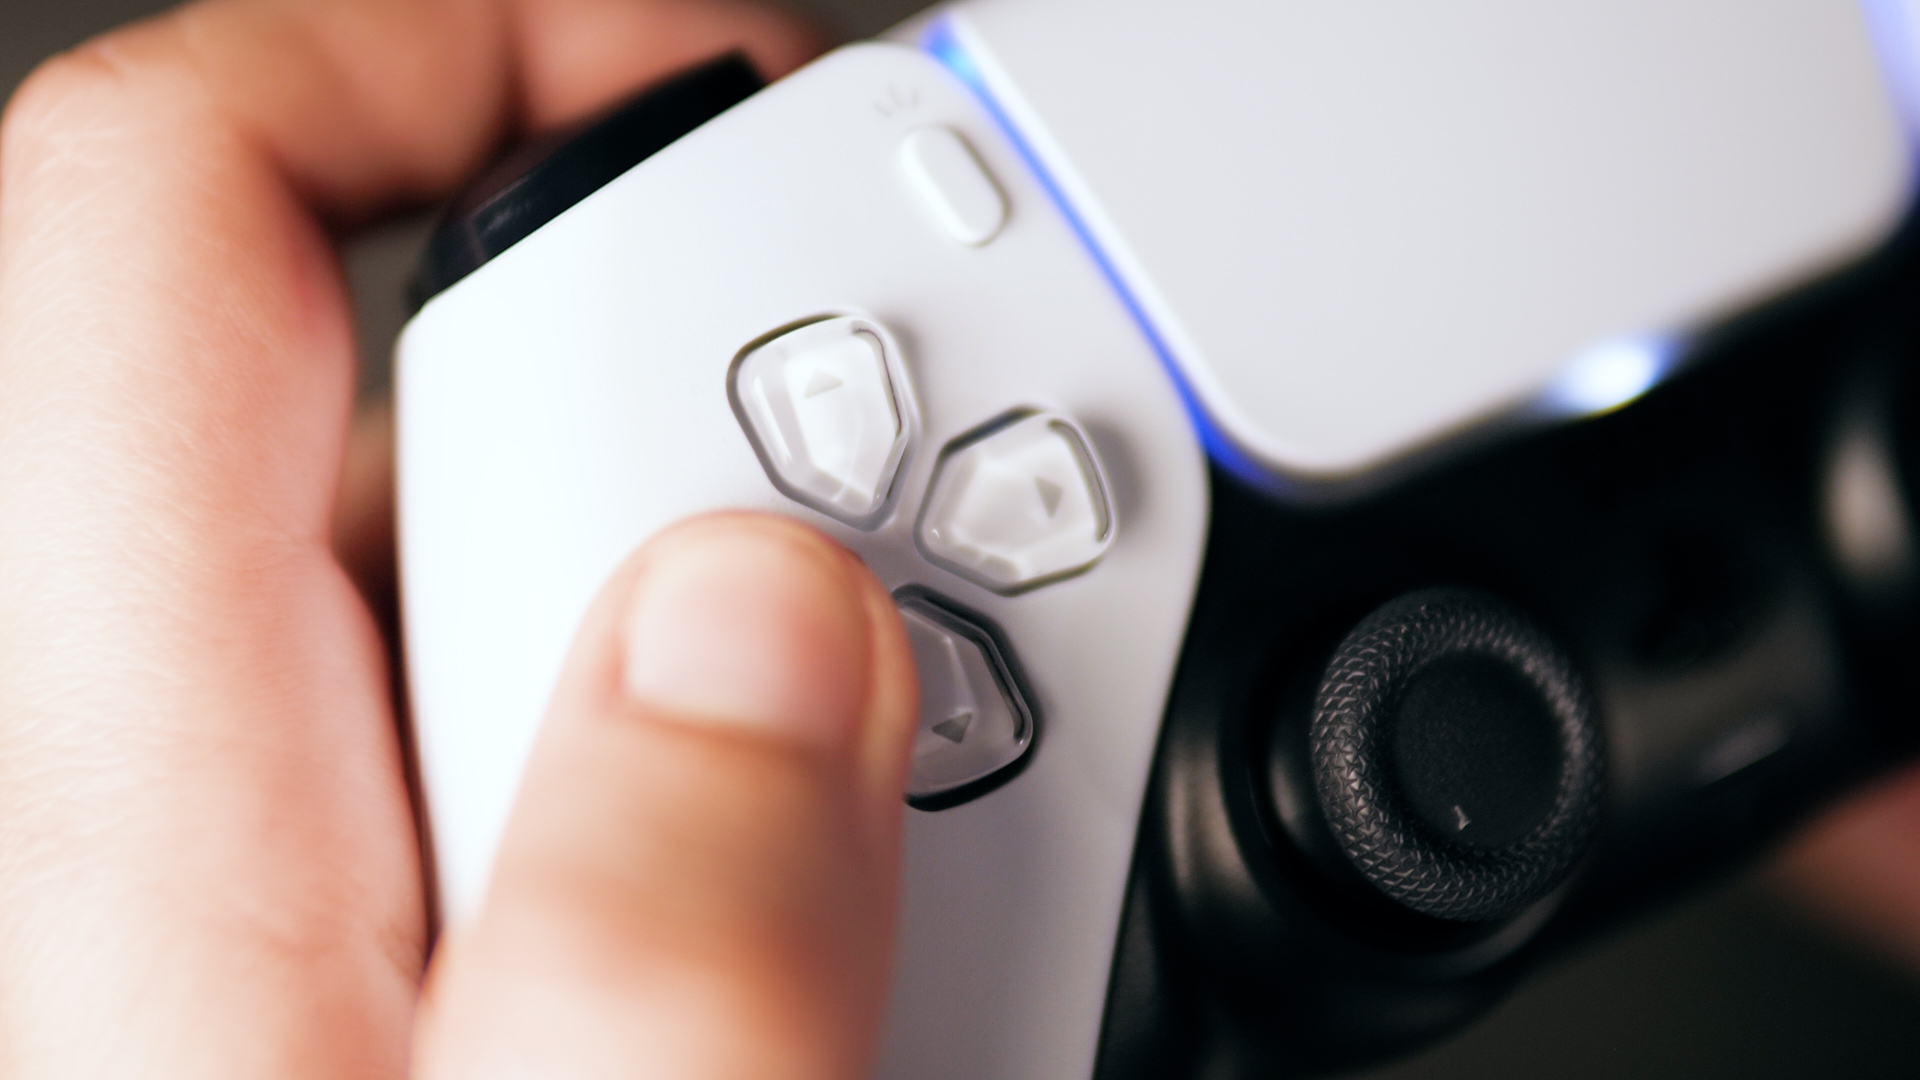 PS5 : Sony dévoile deux nouvelles couleurs pour sa manette DualSense